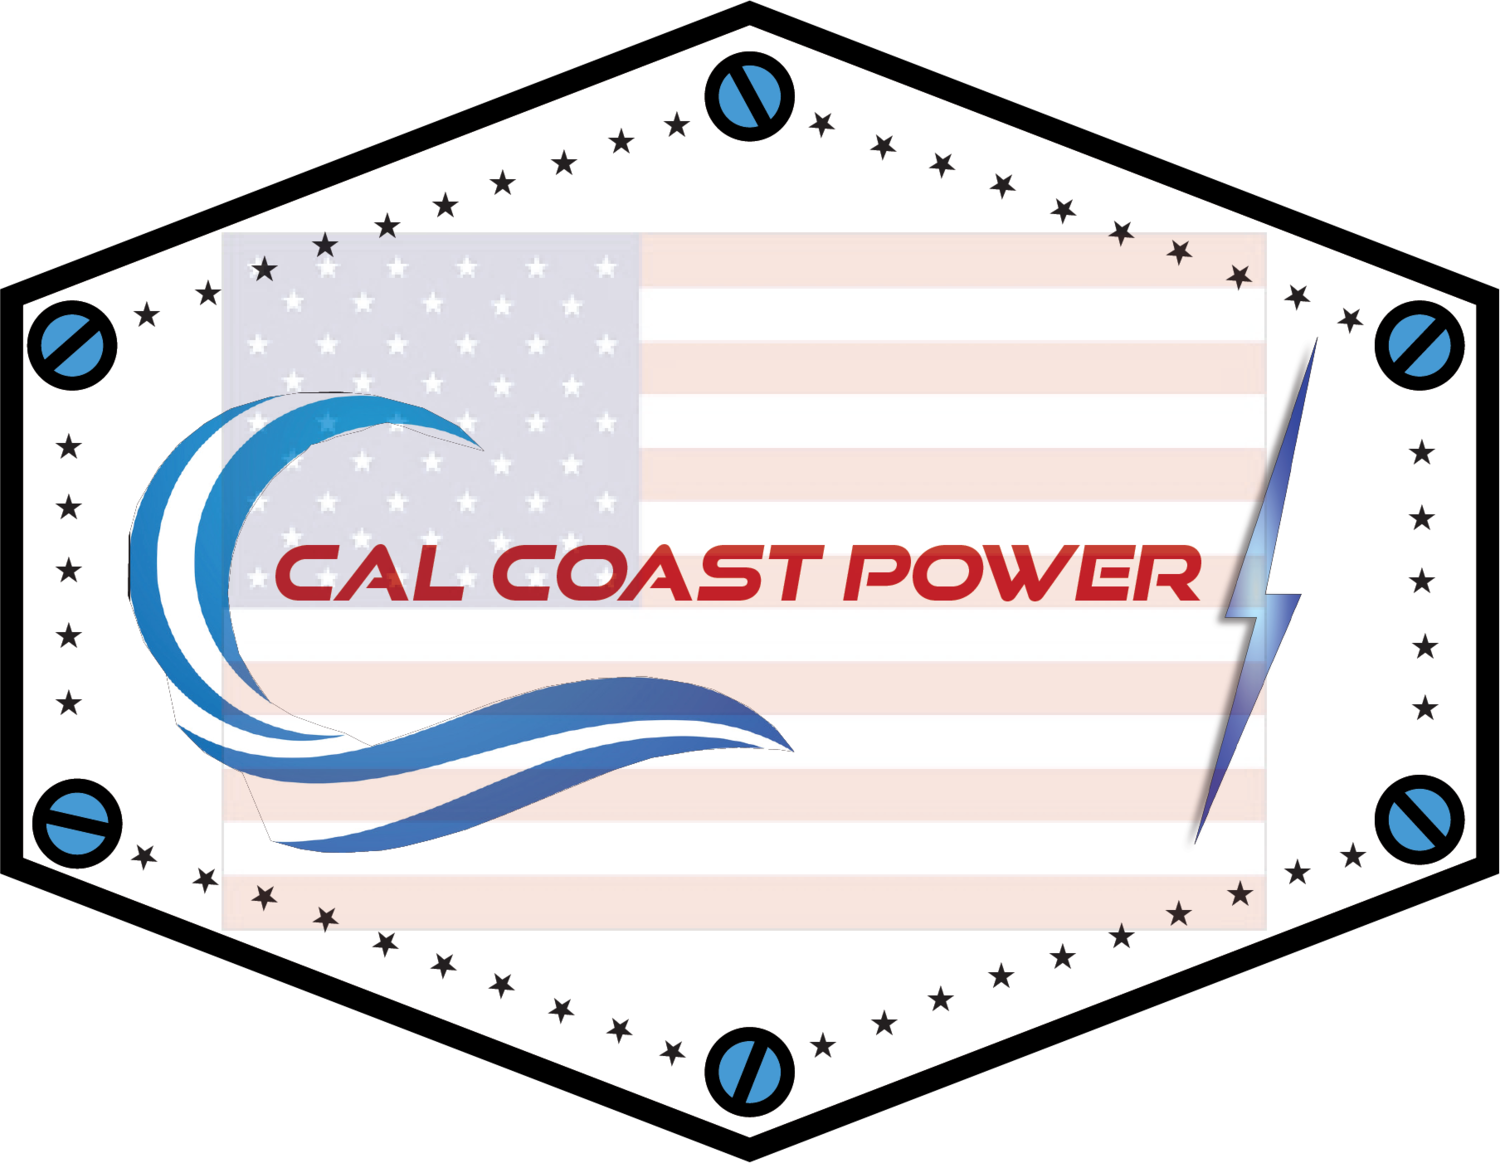 Cal Coast Power